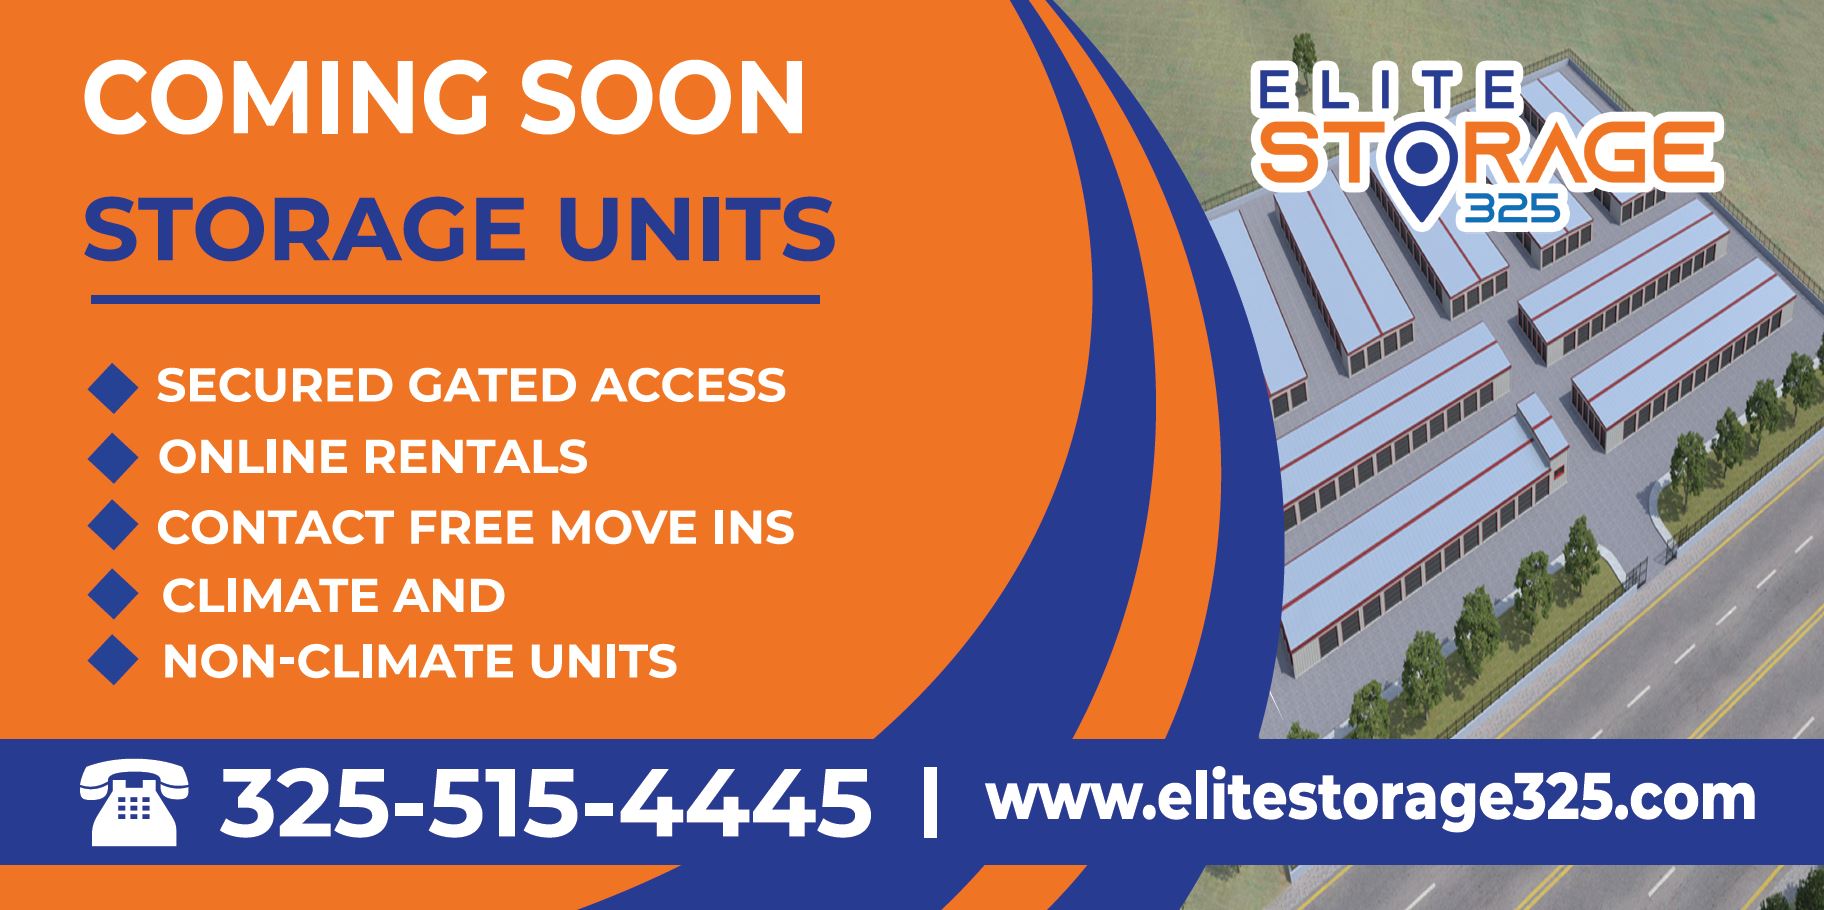 Elite Storage Coming Soon